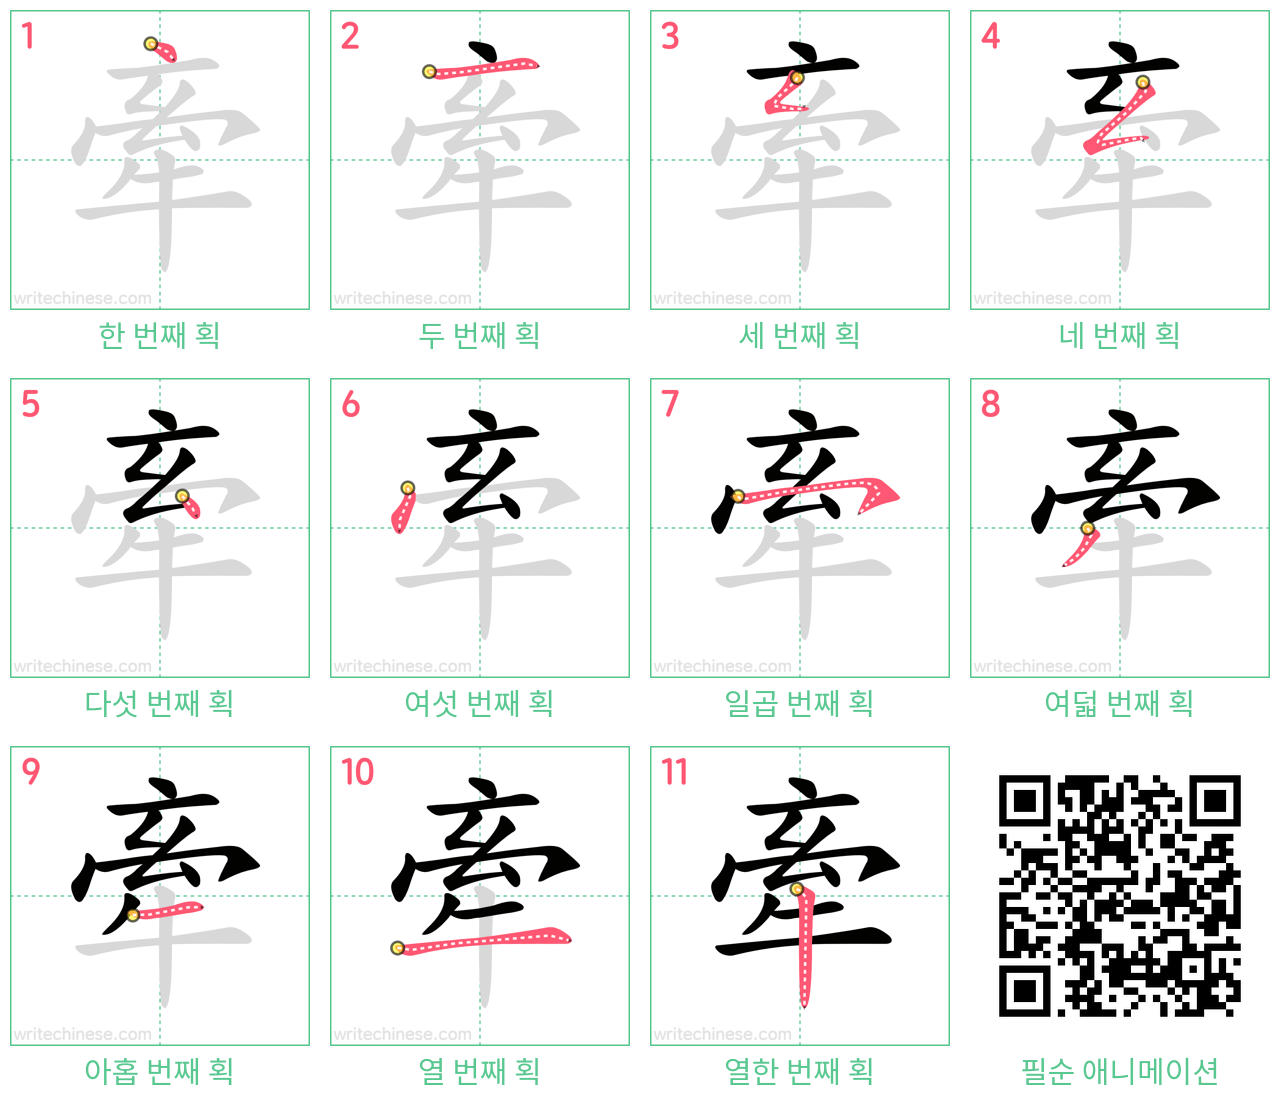 牽 step-by-step stroke order diagrams